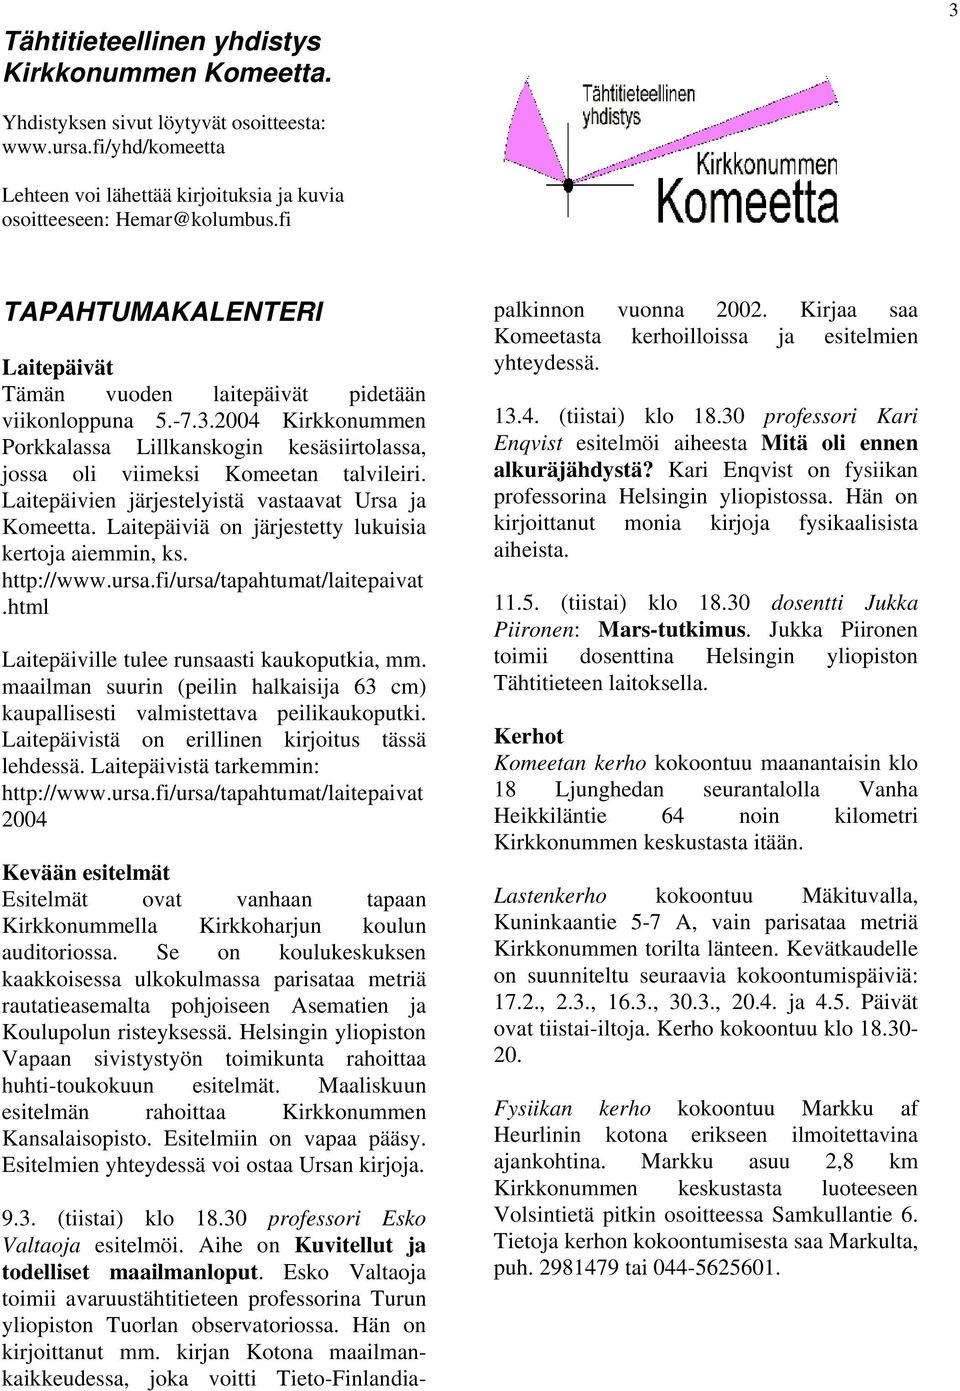 Laitepäivien järjestelyistä vastaavat Ursa ja Komeetta. Laitepäiviä on järjestetty lukuisia kertoja aiemmin, ks. http://www.ursa.fi/ursa/tapahtumat/laitepaivat.